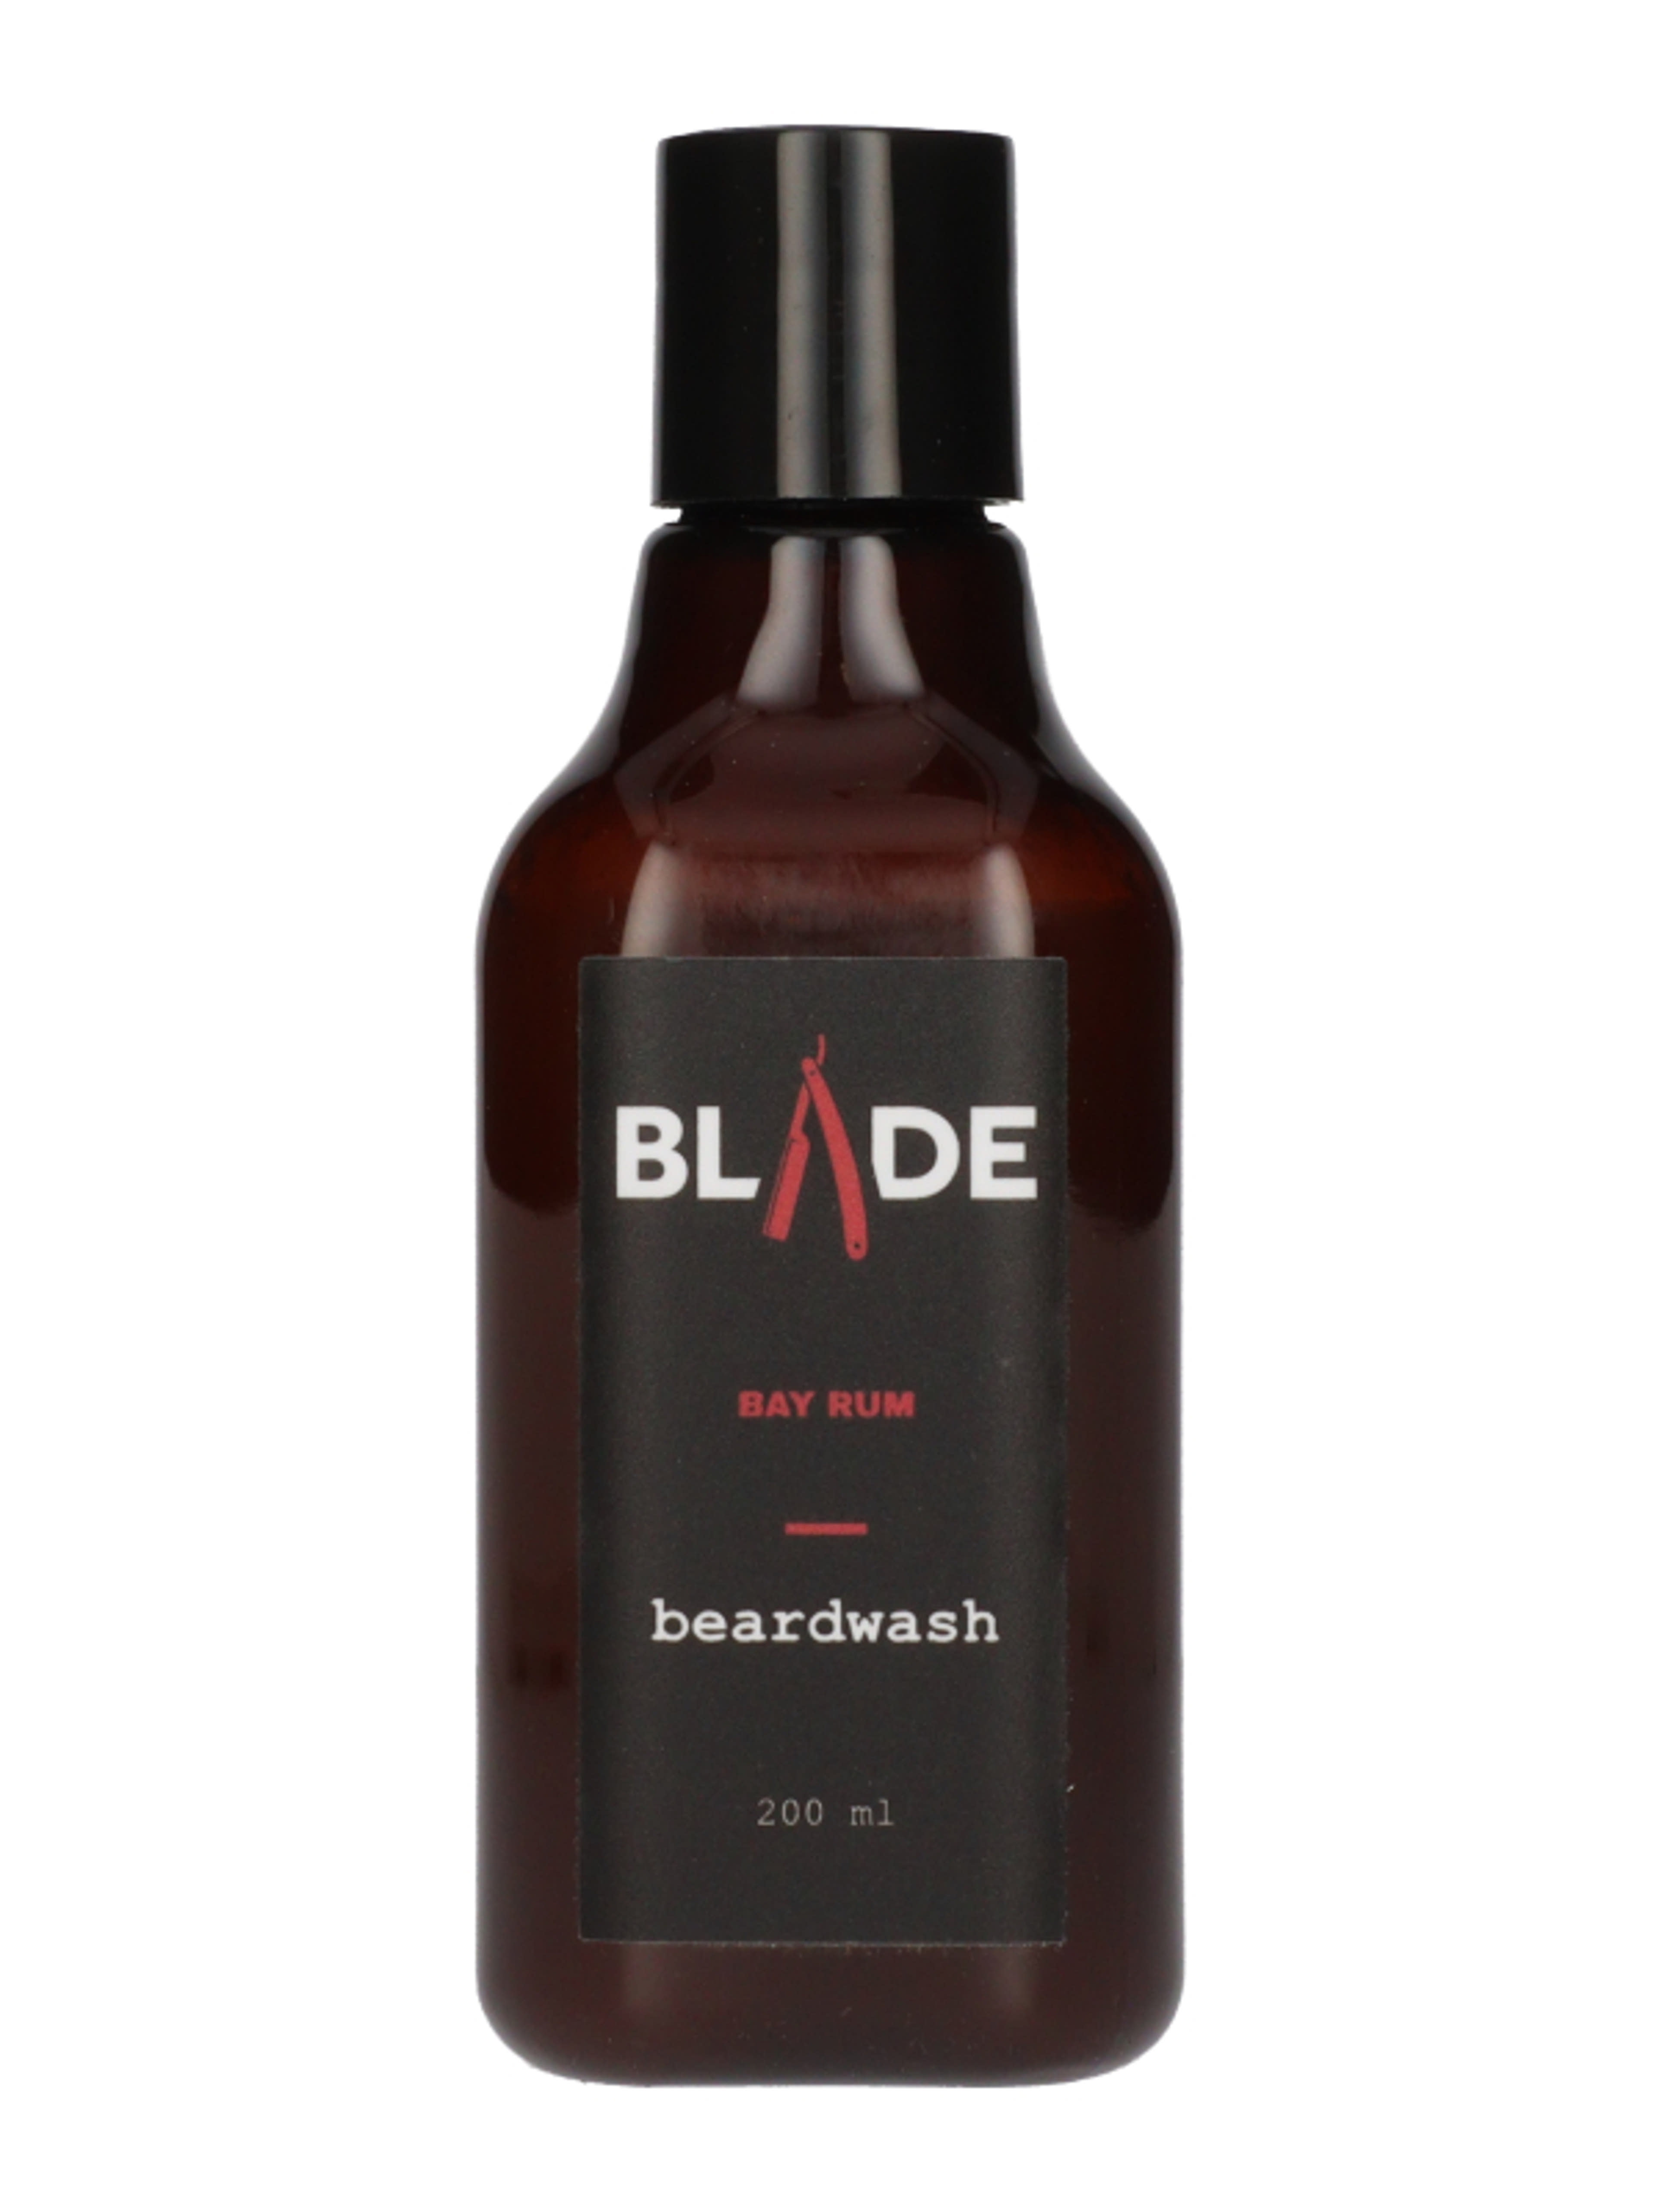 Blade Bay Rum szakállmosó - 200 ml